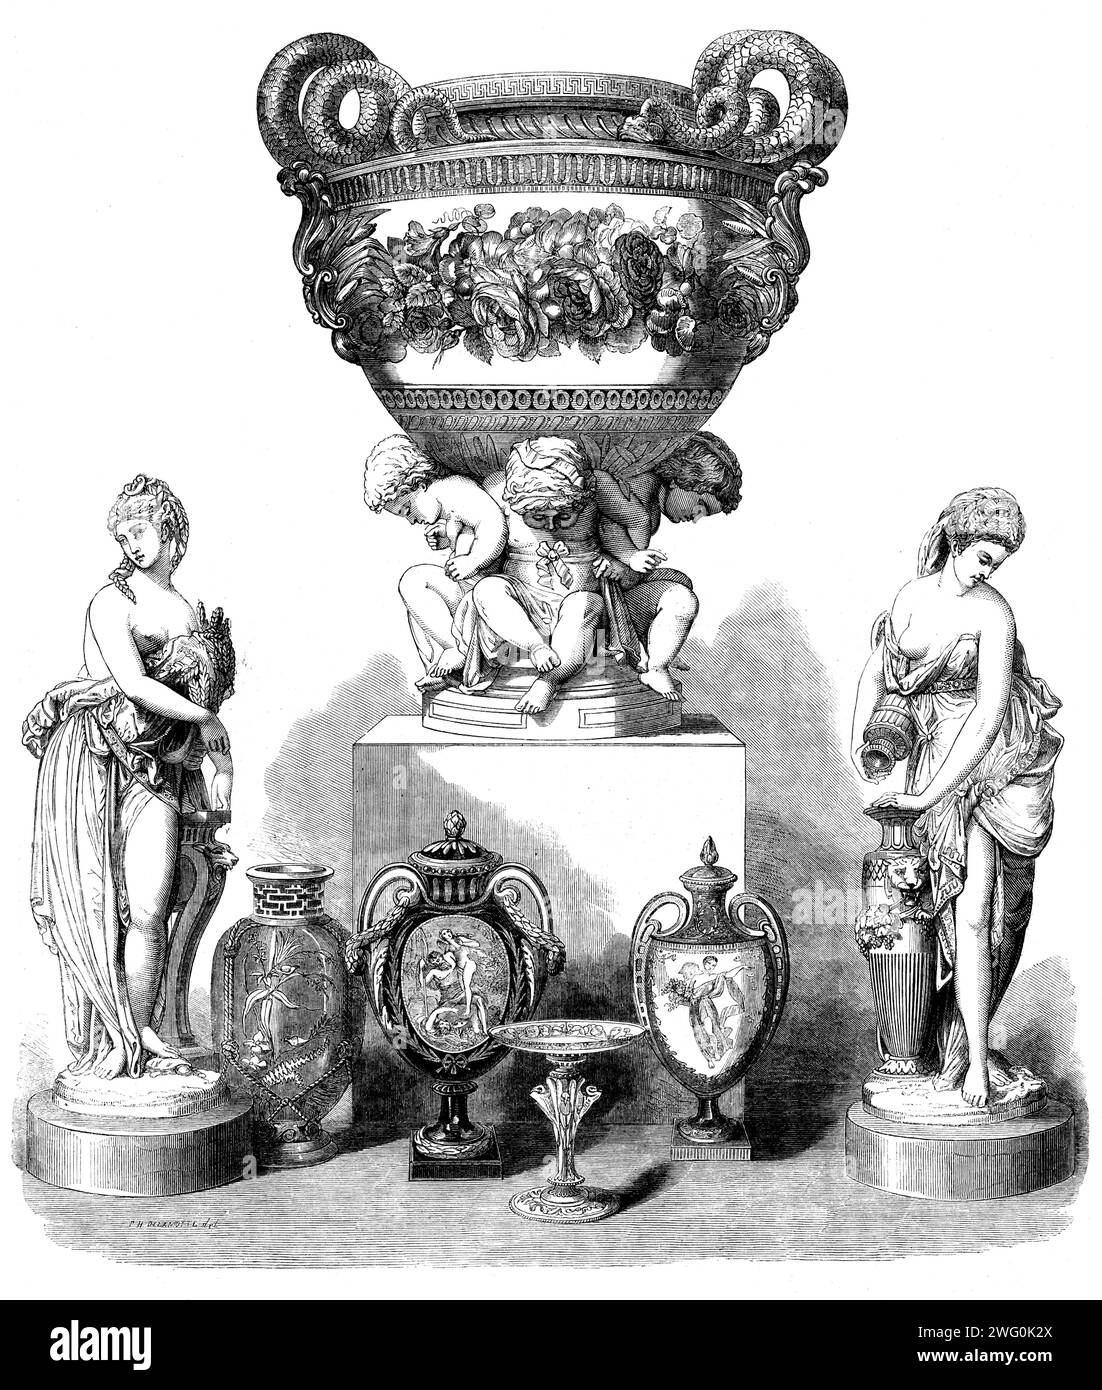 The International Exhibition: Gruppe von Artikeln von Messrs. Minton and Co., 1862. Das zentrale Objekt... ist eine von zwei Vasen von beträchtlicher Größe, die auf einer Gruppe von vier Pariser Cupiden getragen werden, die Bänder und die Vorhänge... sind mit mattiertem Gold umrandet. Der obere und der untere Teil der Vase sind aus tiefem Sevres-Blau, auf dem massives Goldschmuck aufgetragen ist, von dem Teile mattiert sind, während andere Teile brüniert sind. Die Griffe, die aus spiralförmig gewickelten Schlangen bestehen, sind ebenfalls aus mattem Gold...die Renaissancefiguren...sind allegorisch von Sommer und Herbst - Sommer mit einem Bündel Gr Stockfoto